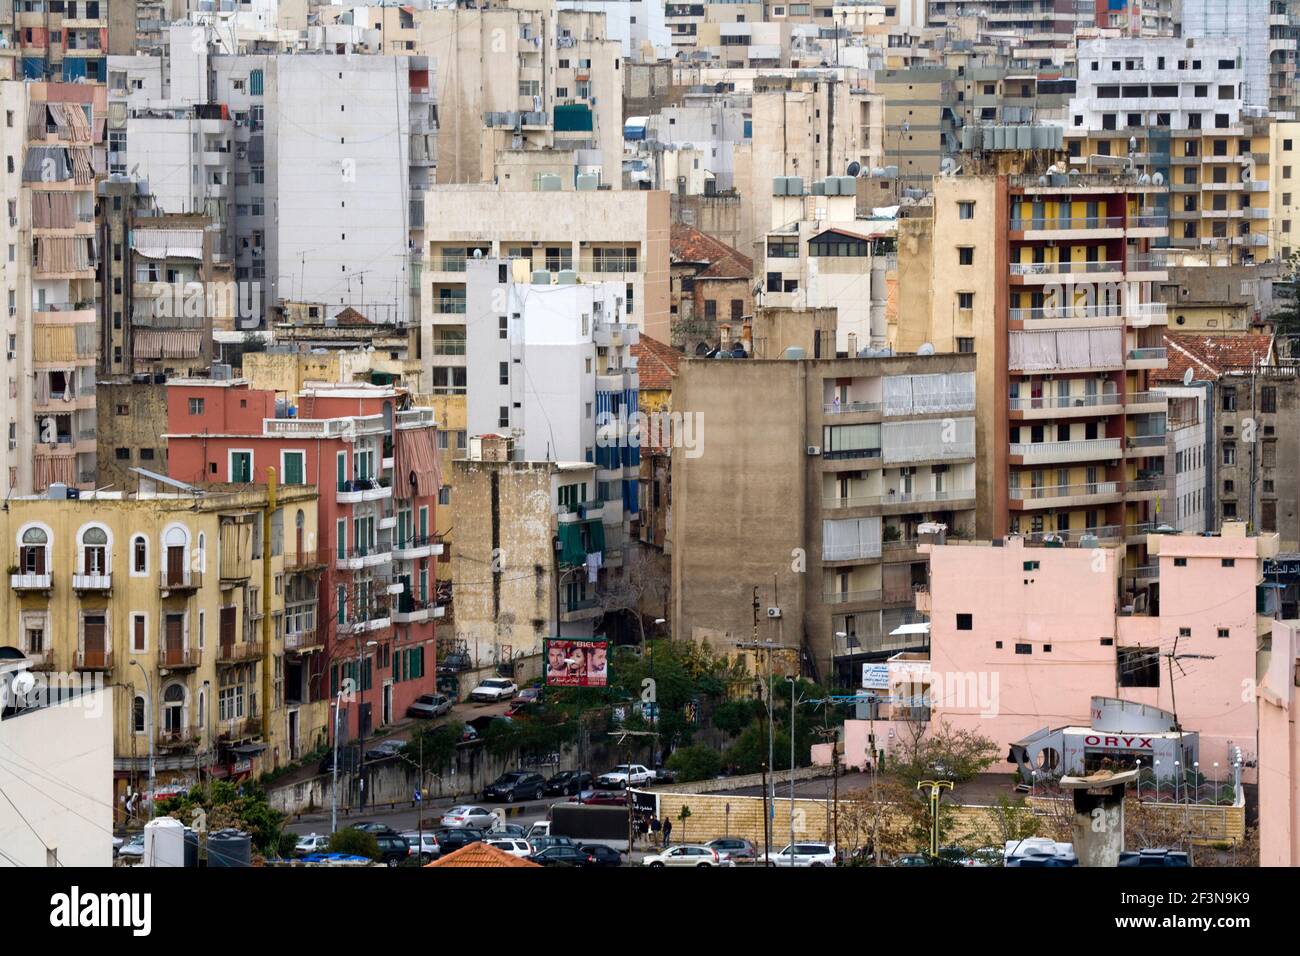 Beirut ist dicht besiedelt und die Gebäude drängen sich dicht zusammen. Stockfoto